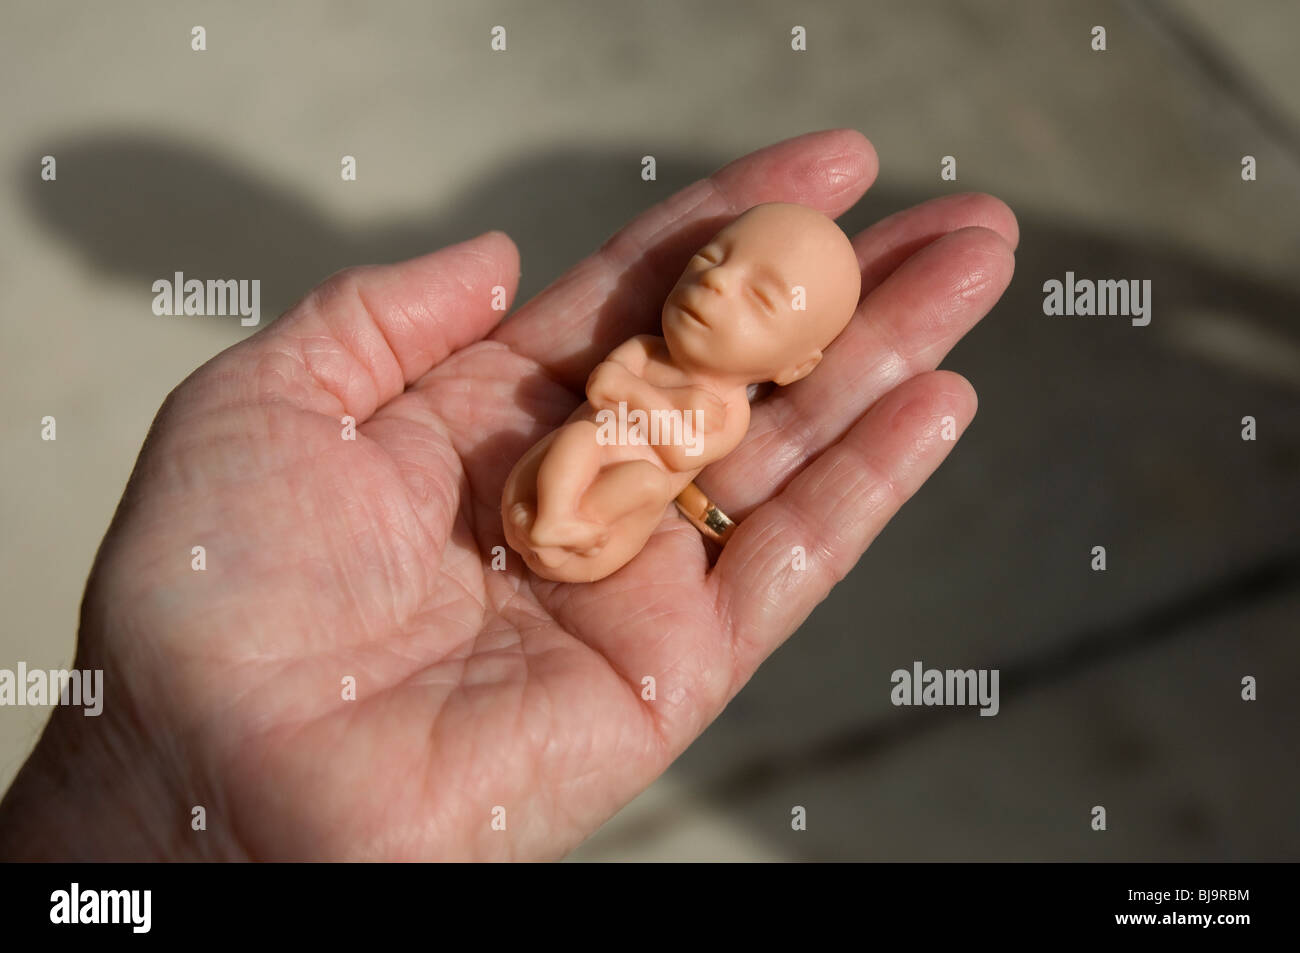 Modèle de 12 semaines foetus tenue en main femelle Banque ...